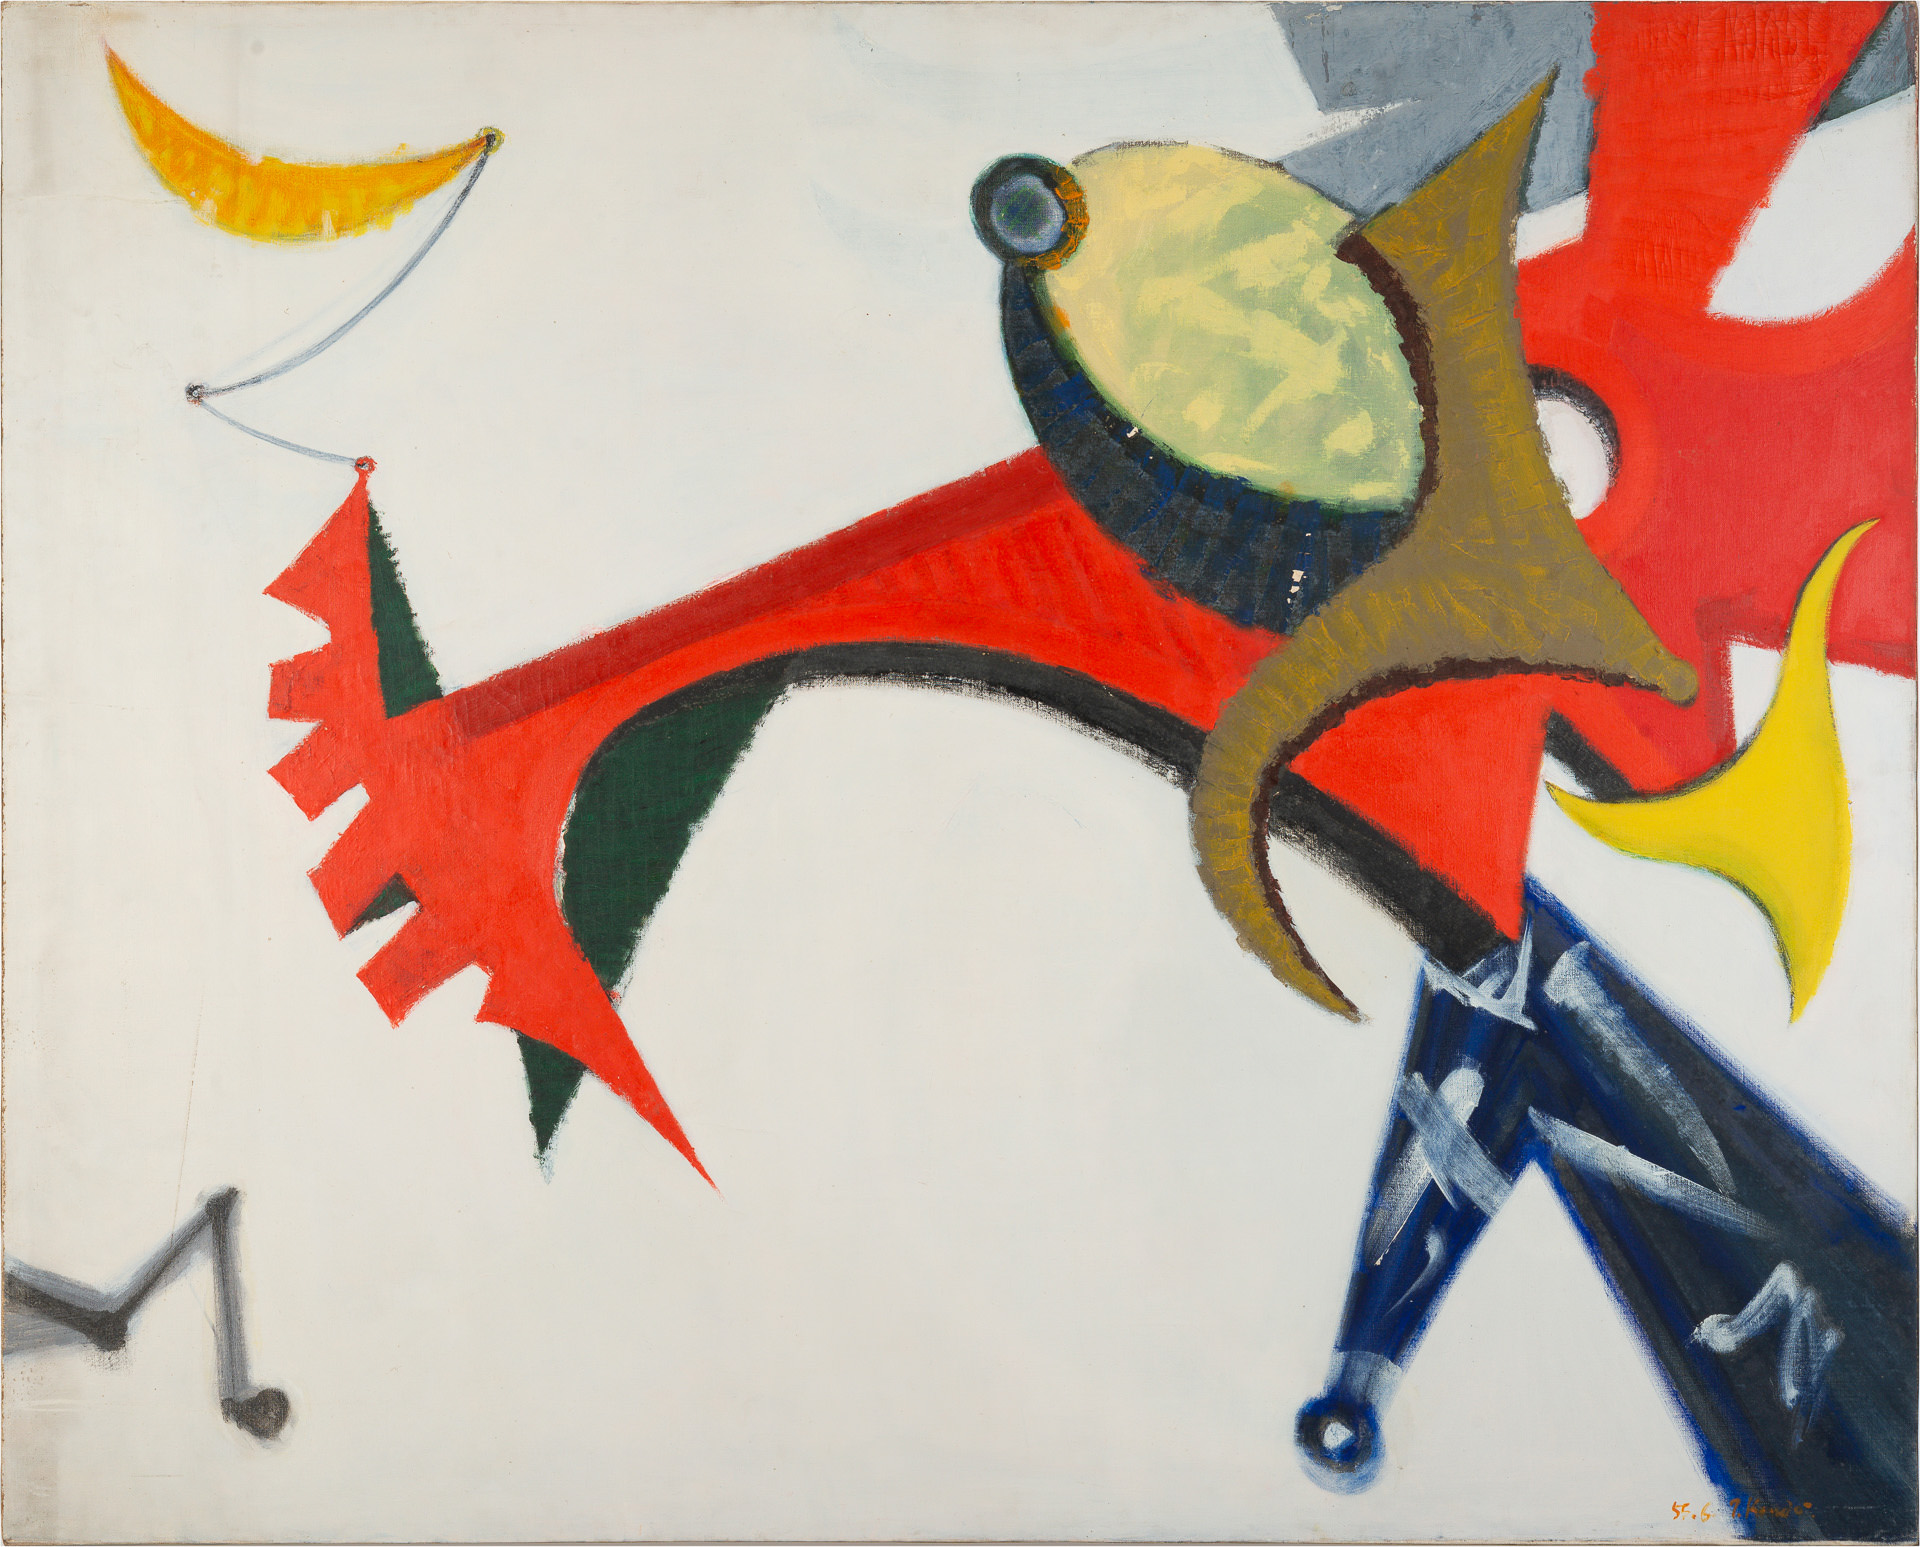 近藤竜男〈作品A〉, 油彩・カンヴァス, 131×162, 第19回新制作協会展, 1955